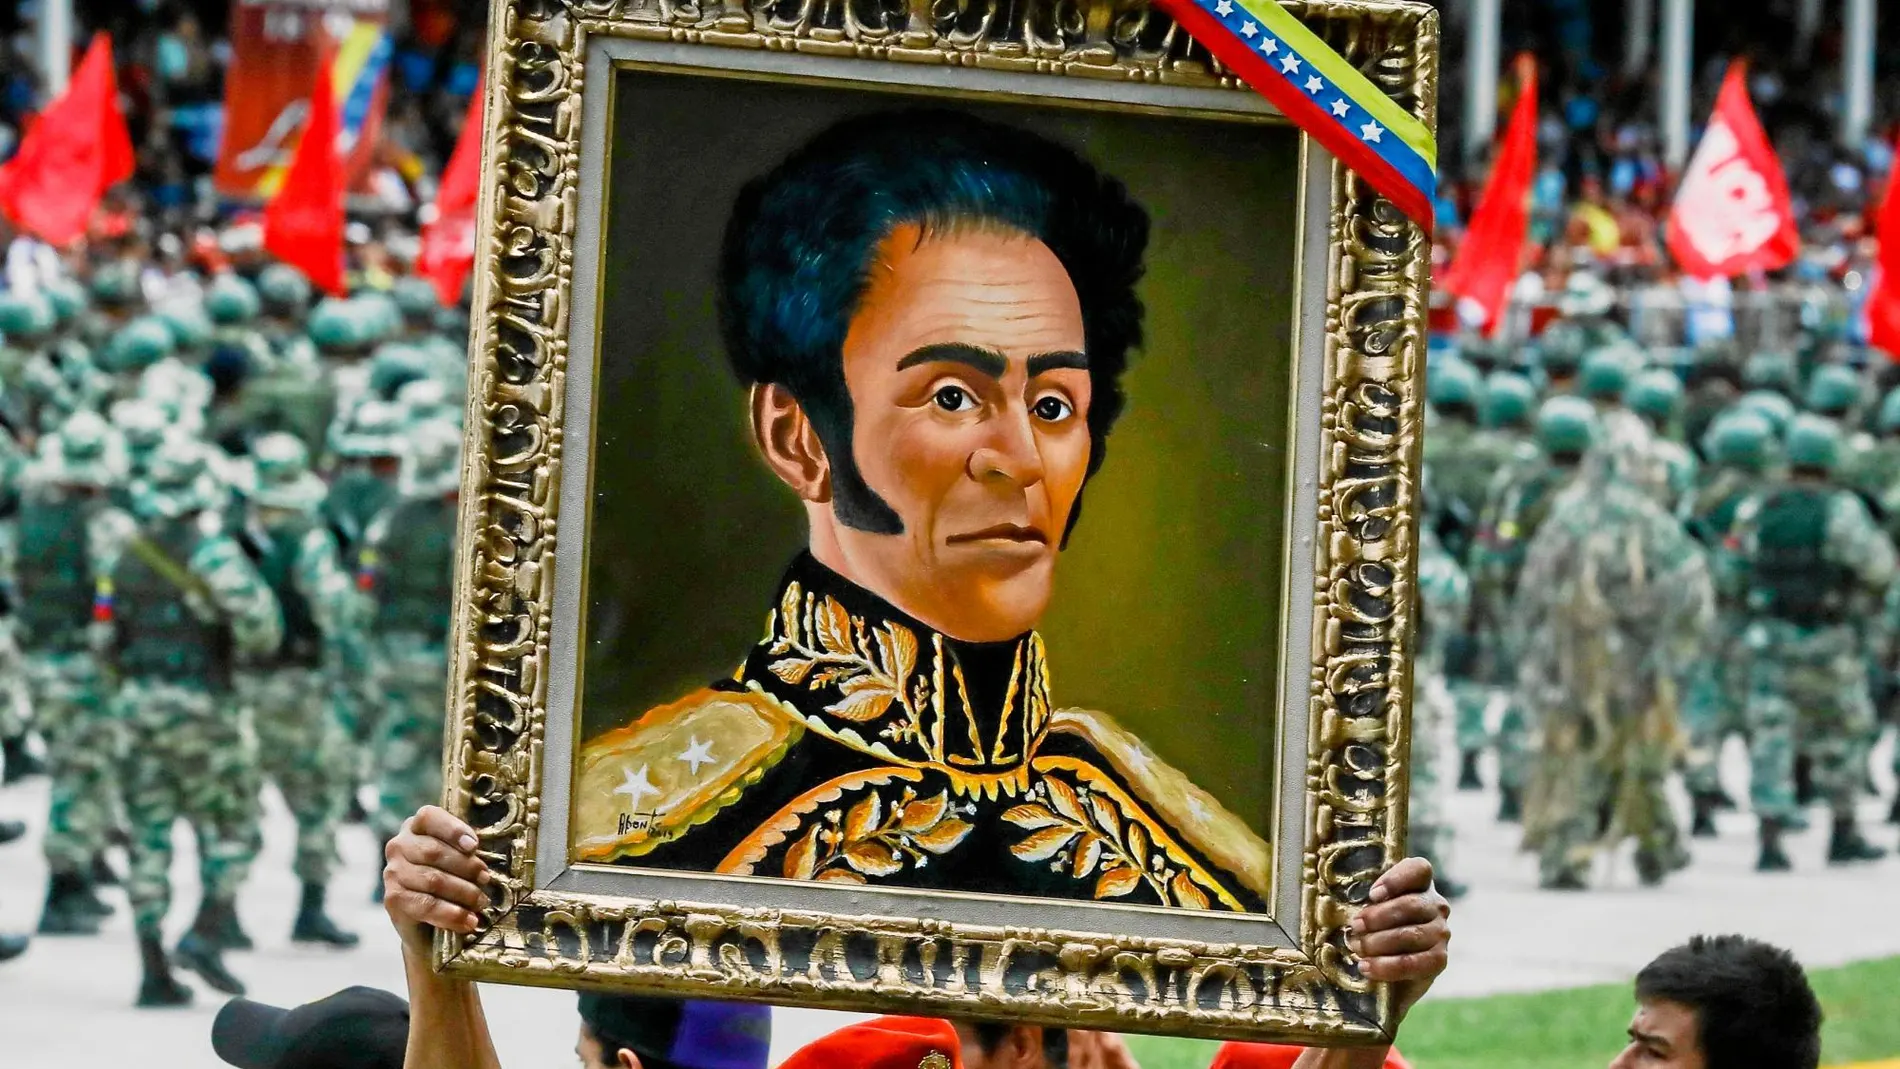 El chavismo se apropió de la imagen de Bolívar desde su llegada al poder en Venezuela